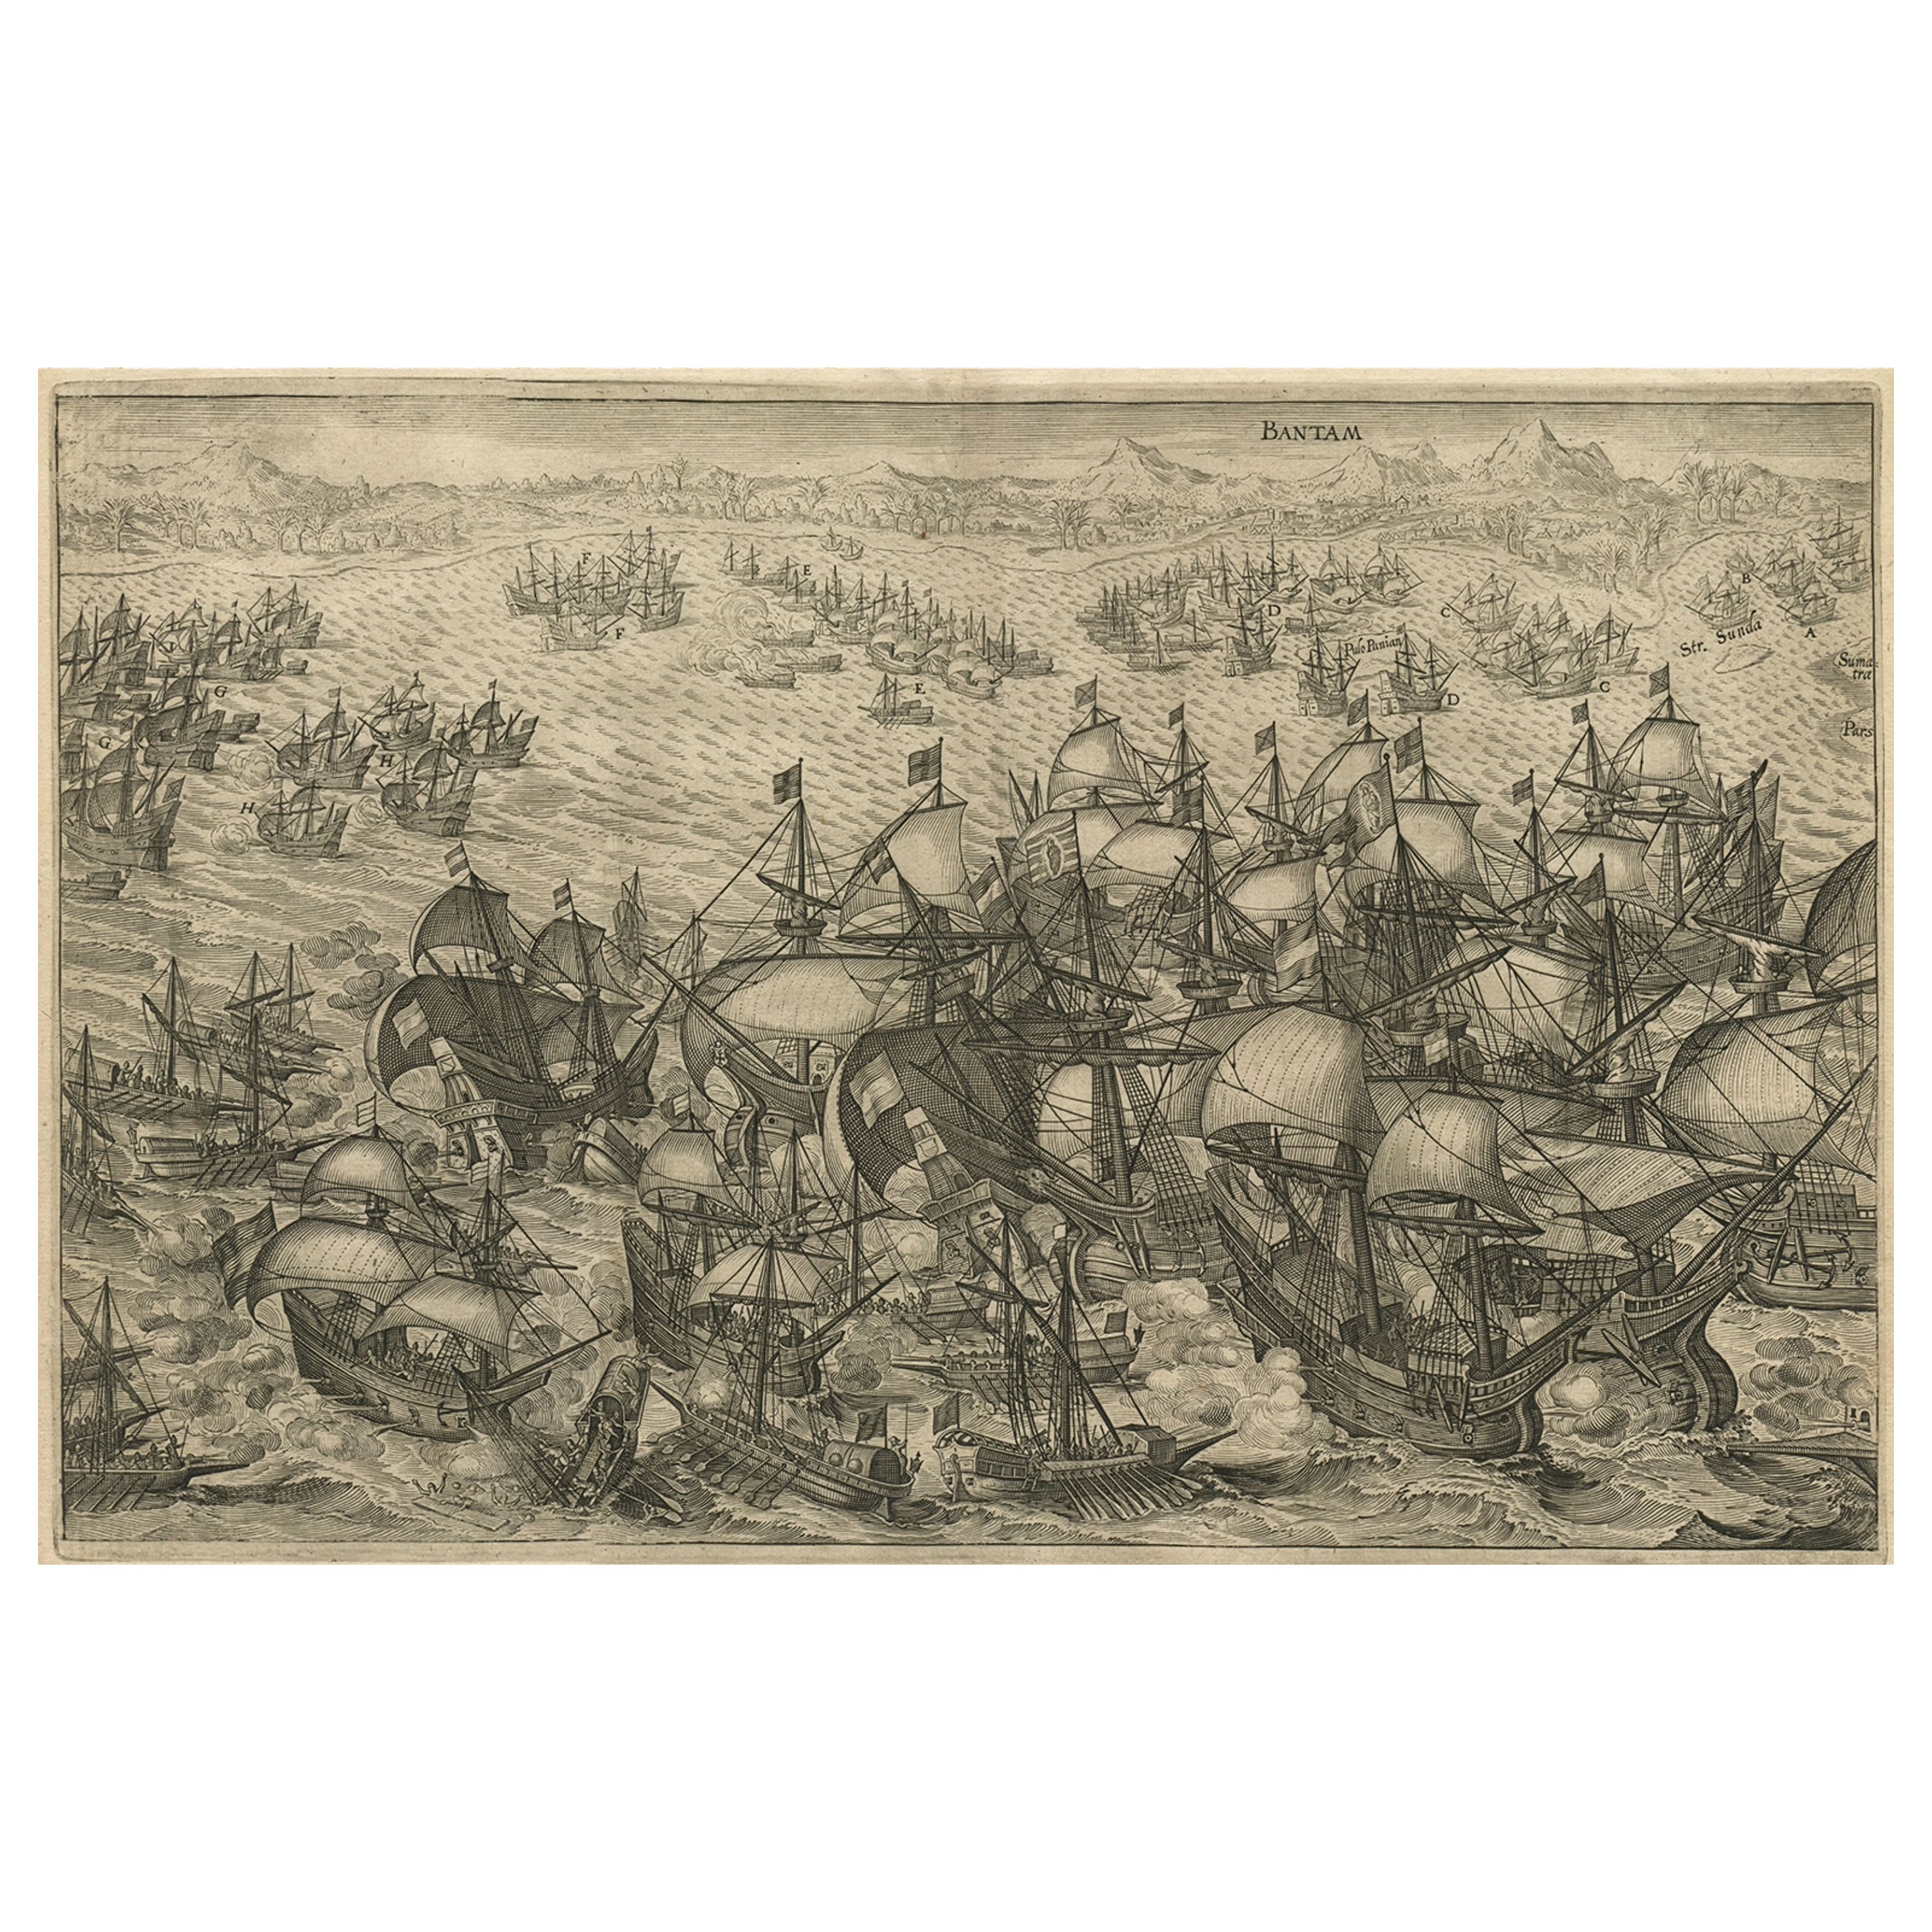 Gravure d'une attaque néerlandaise de la flotte portugaise au large de Bantam, Indonésie, 1644